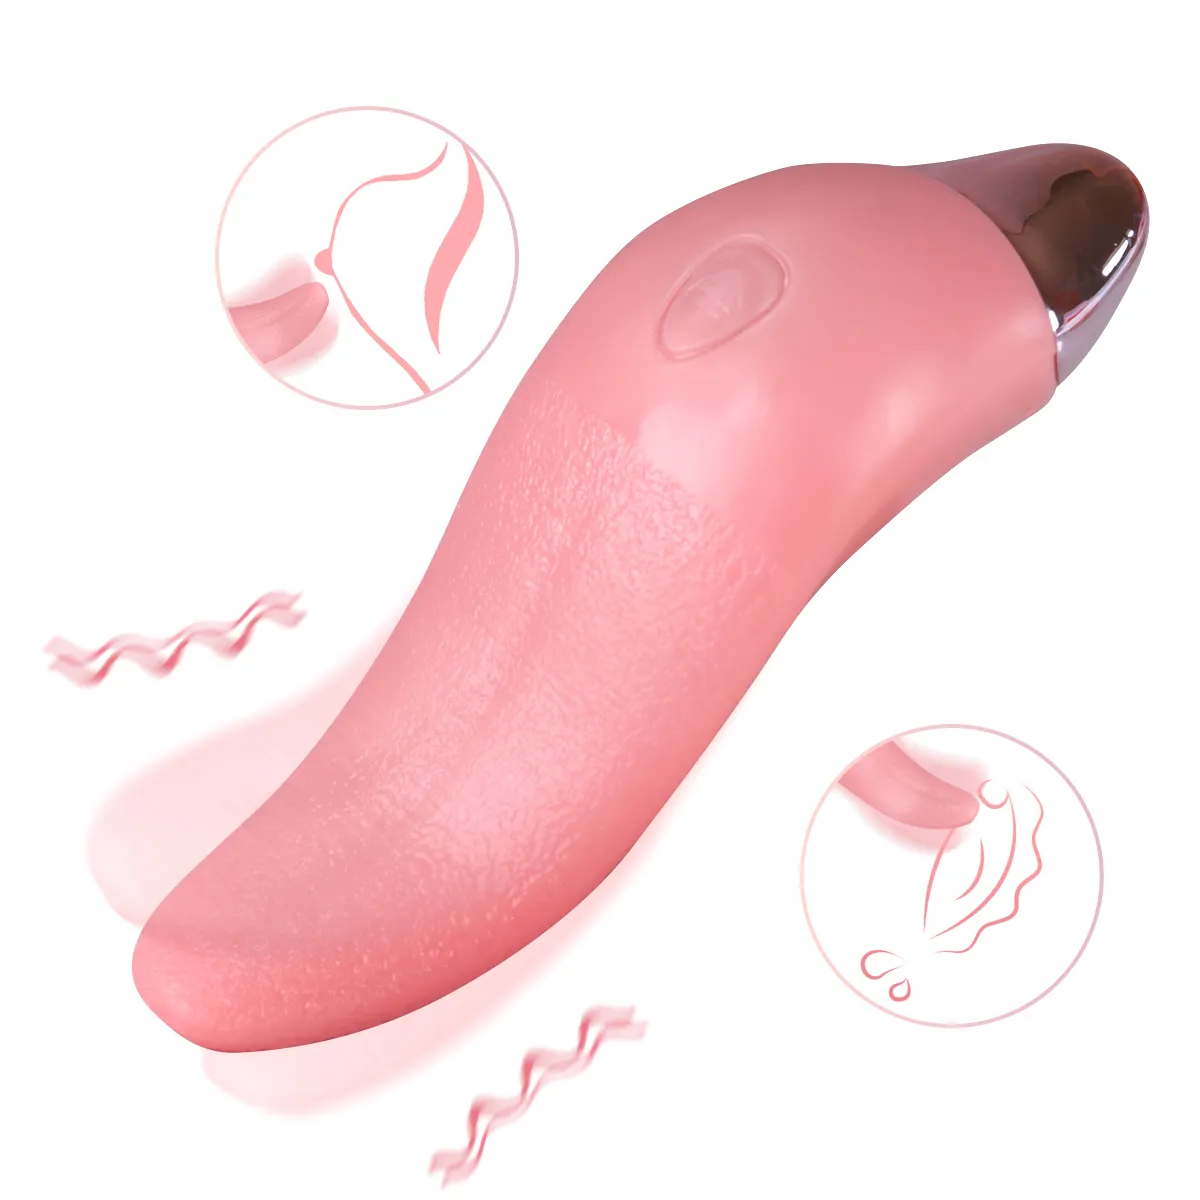 Dil yalama vibratör kadınlar için G spot klitoral stimülatör Mini Clit seks oyuncakları kadınlar için Recharged meme kadın Masturbator %